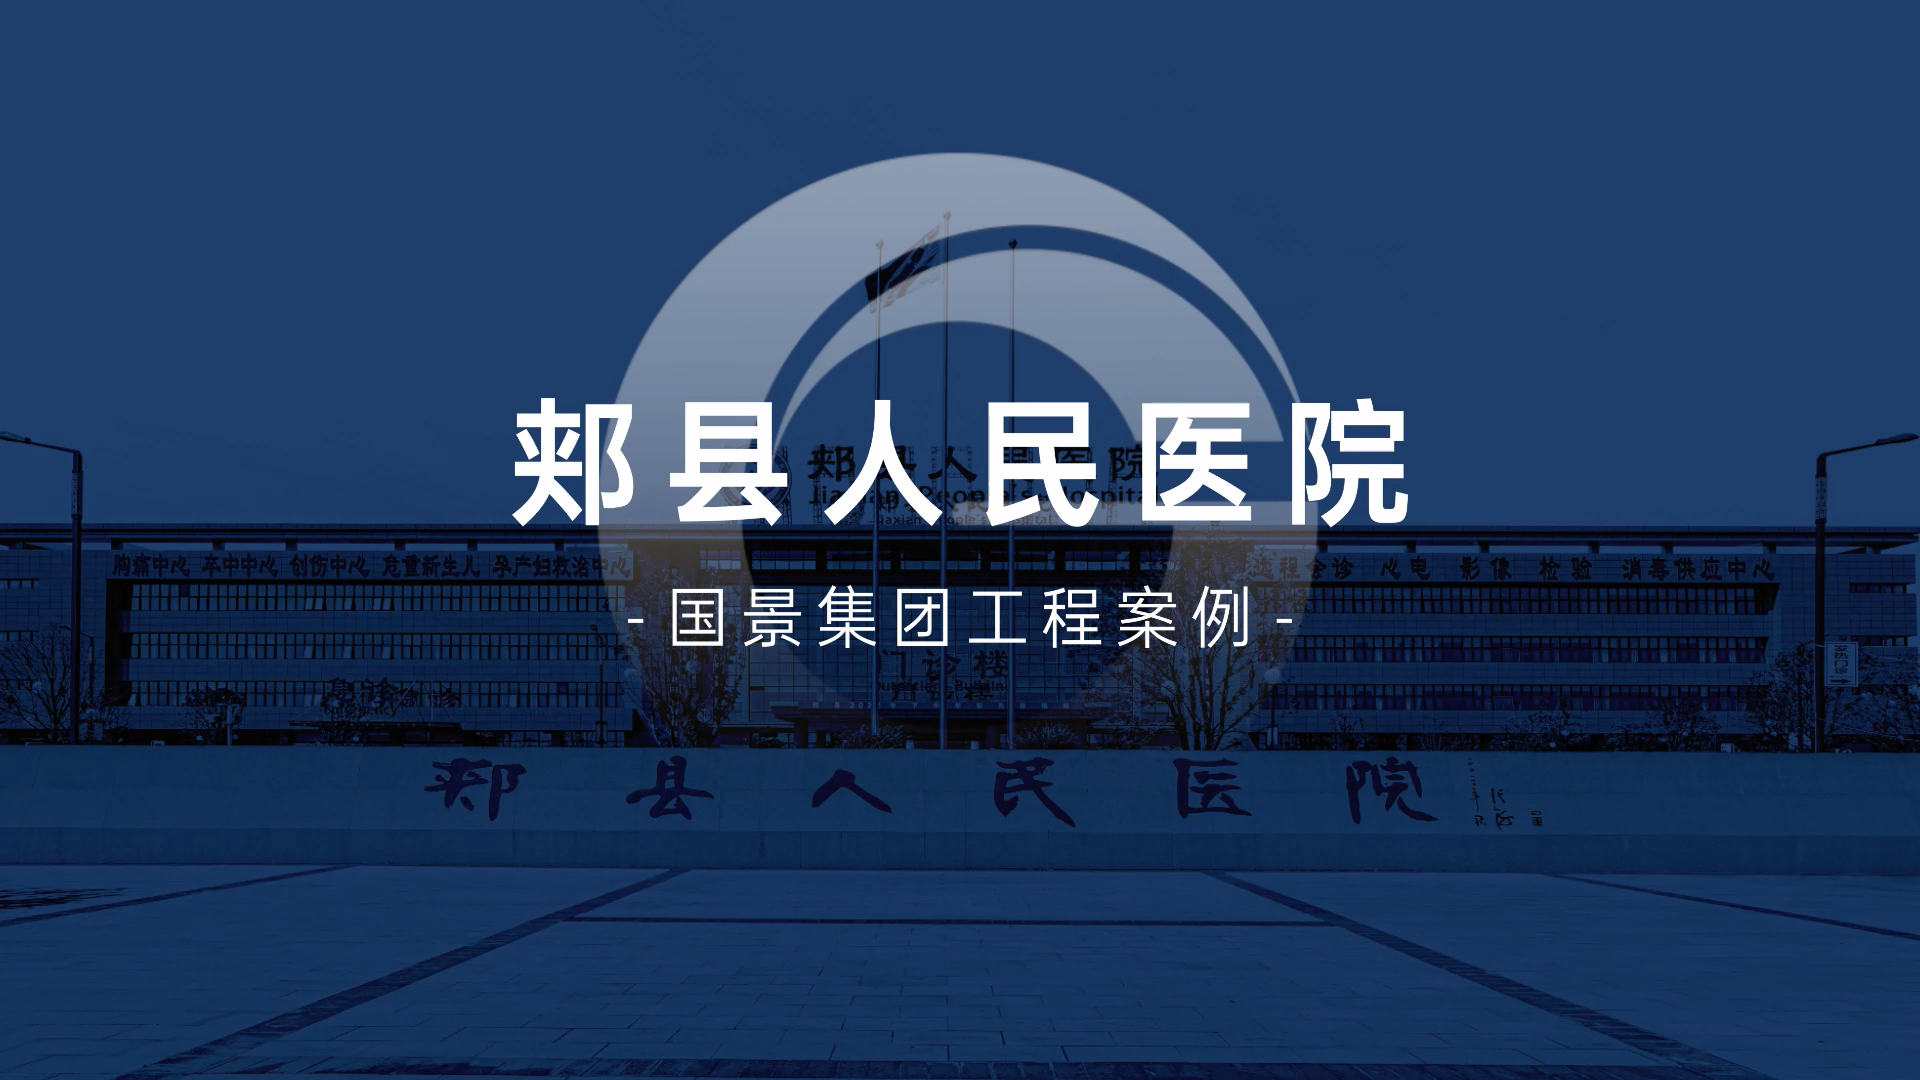 「酷游九州
工程」郏县人民医院，为人民的健康事业从“心”出发！